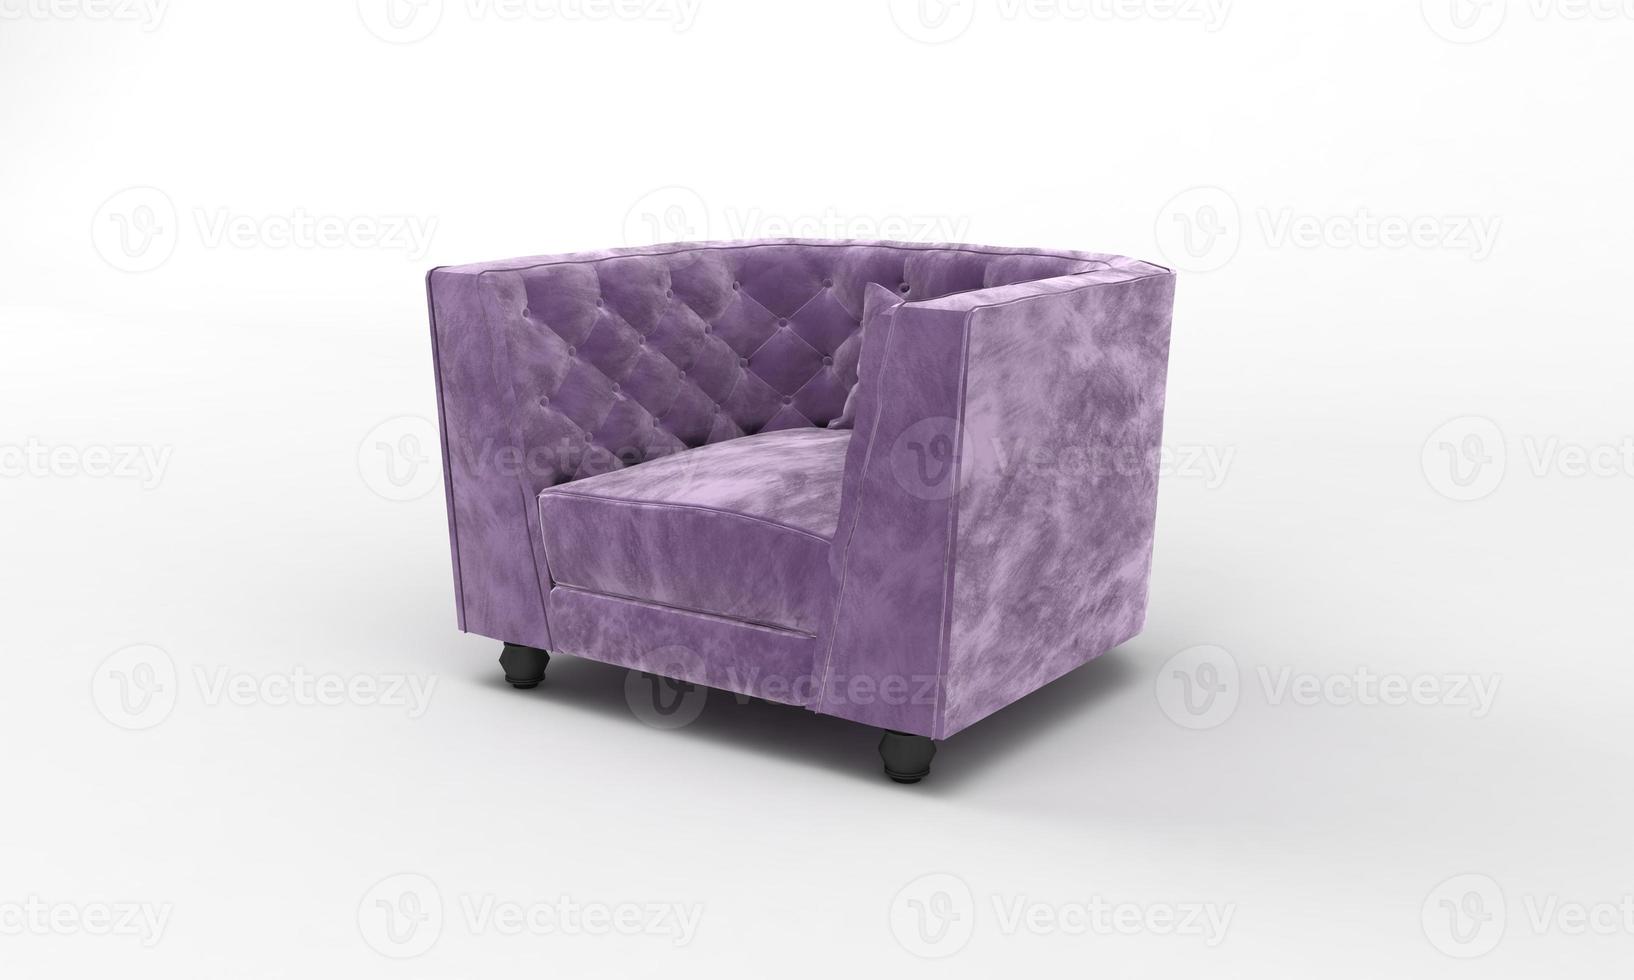 canapé simple chaise vue de côté meubles rendu 3d photo